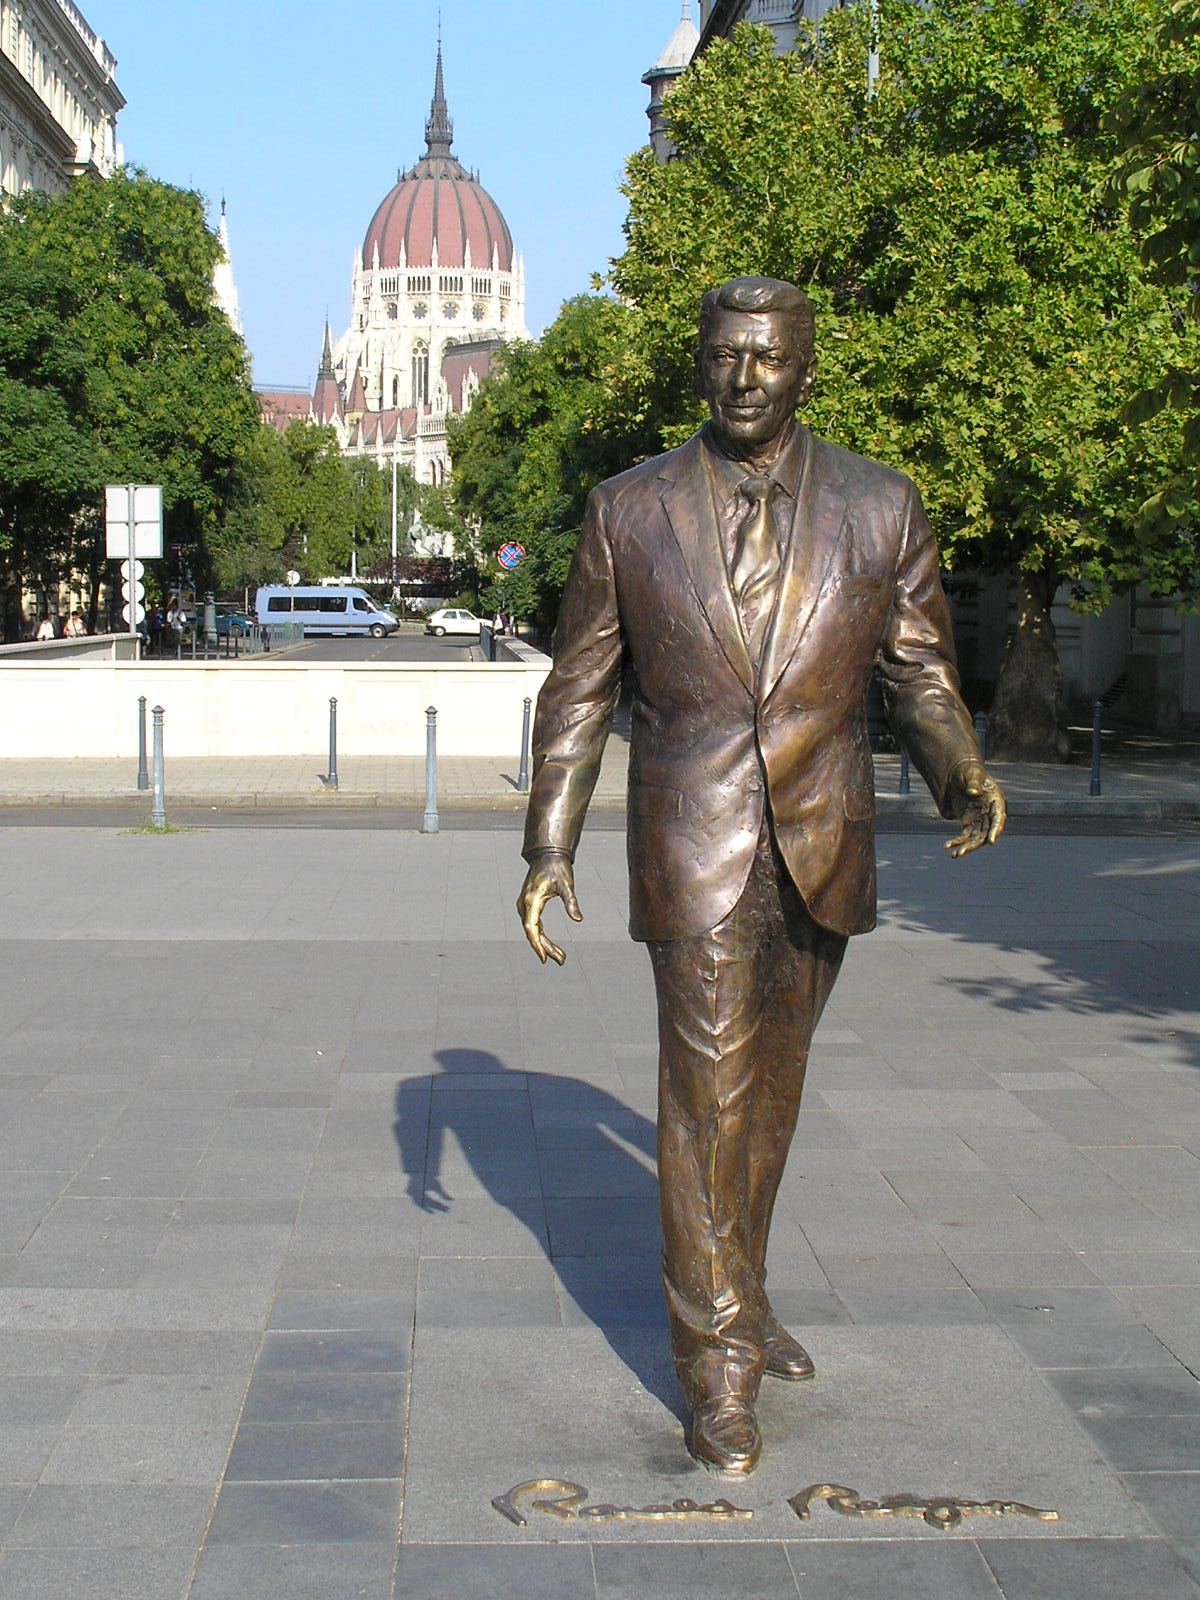 0 002 Reagan elnök szobra a Szabadság térnél